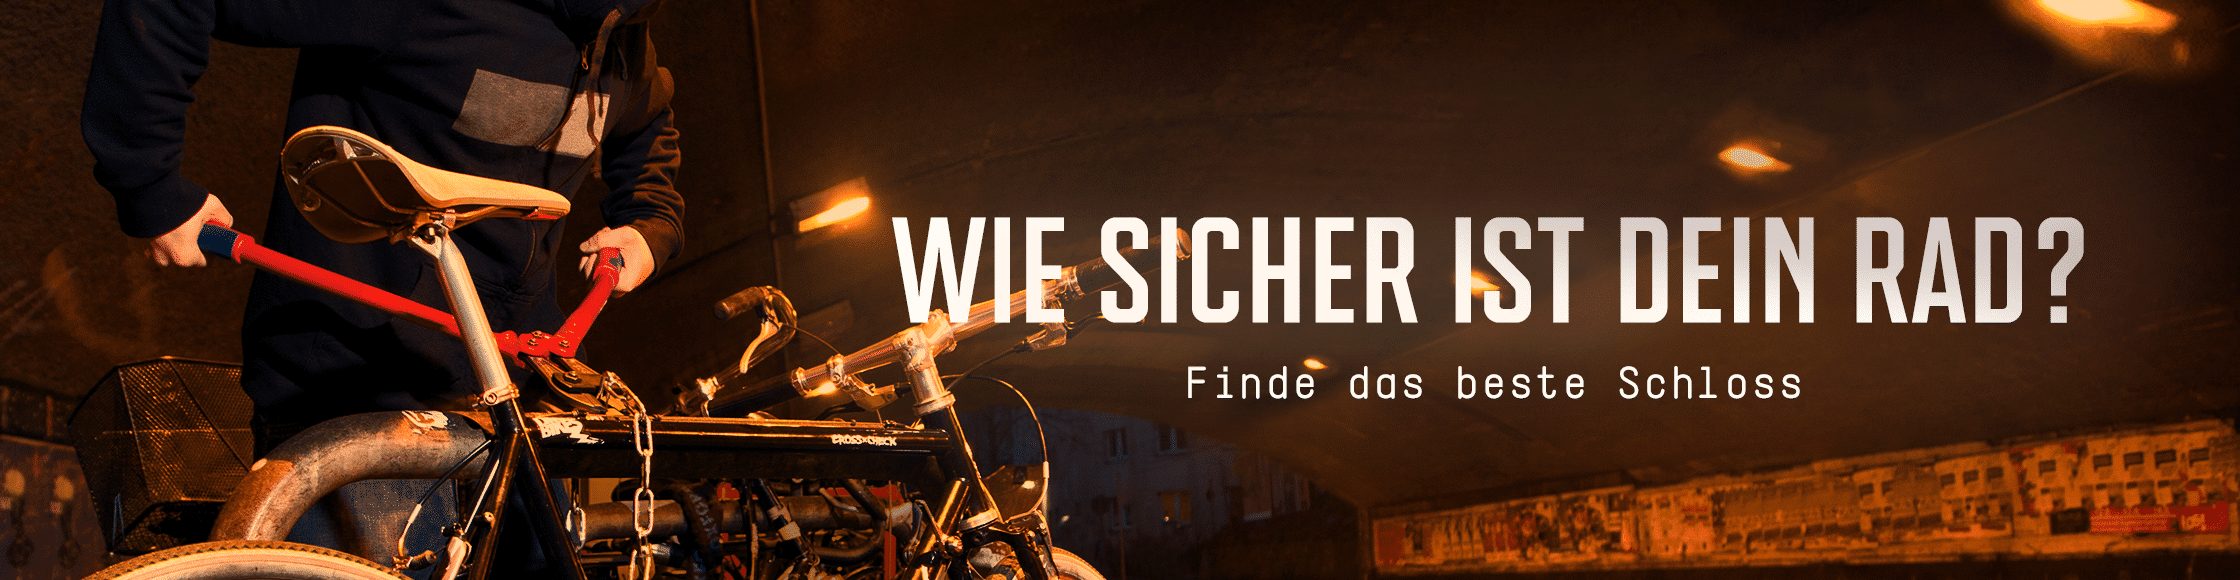 Schloesser_LP Header Half_DE_01.png